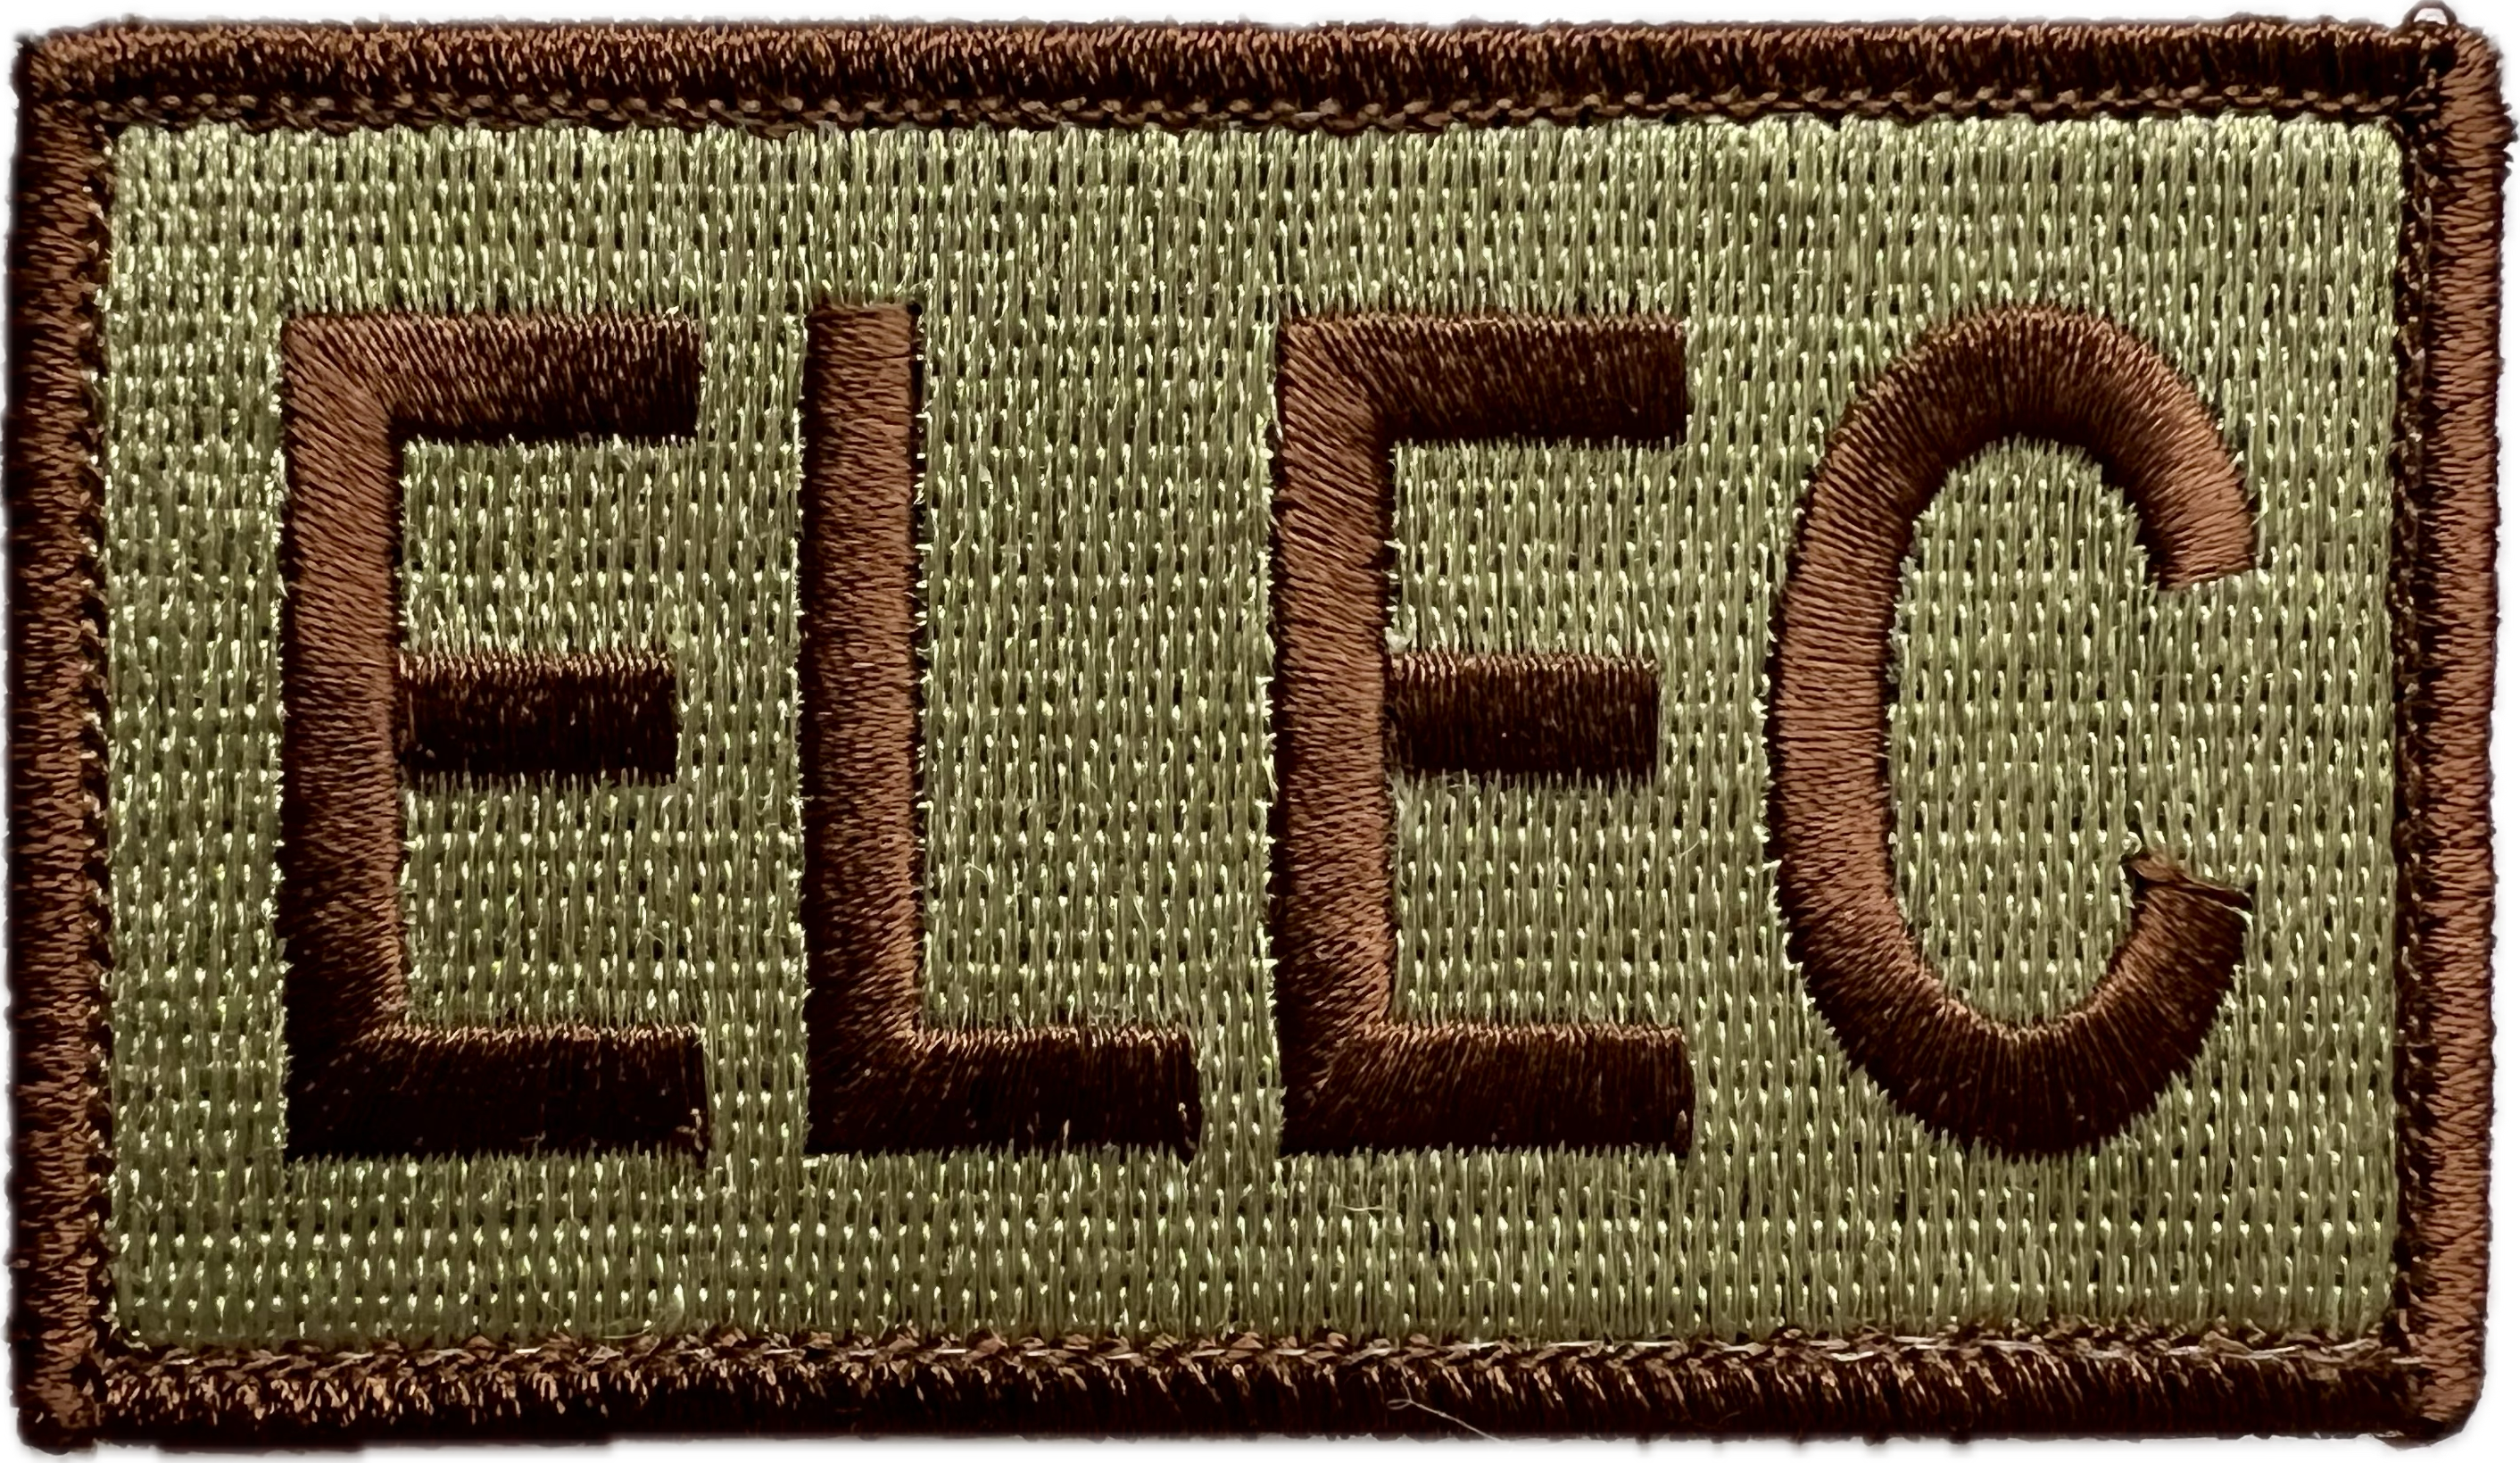 ELEC - Duty Identifier Patch (Reaper Red)